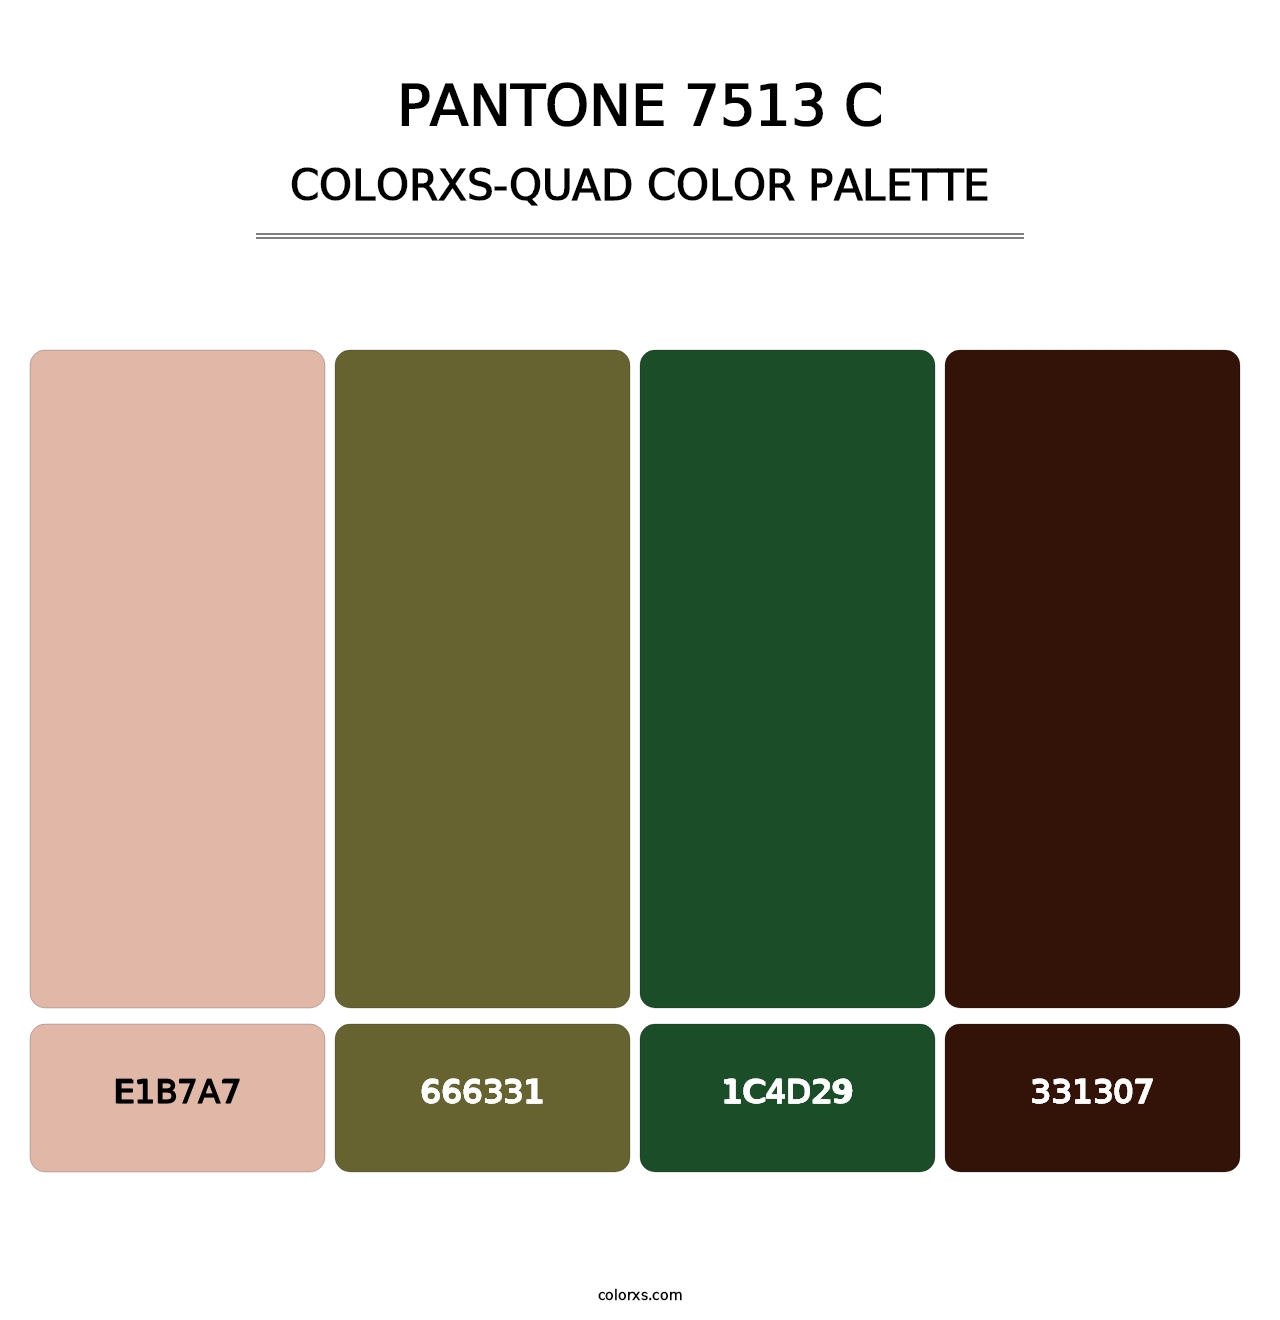 PANTONE 7513 C - Colorxs Quad Palette